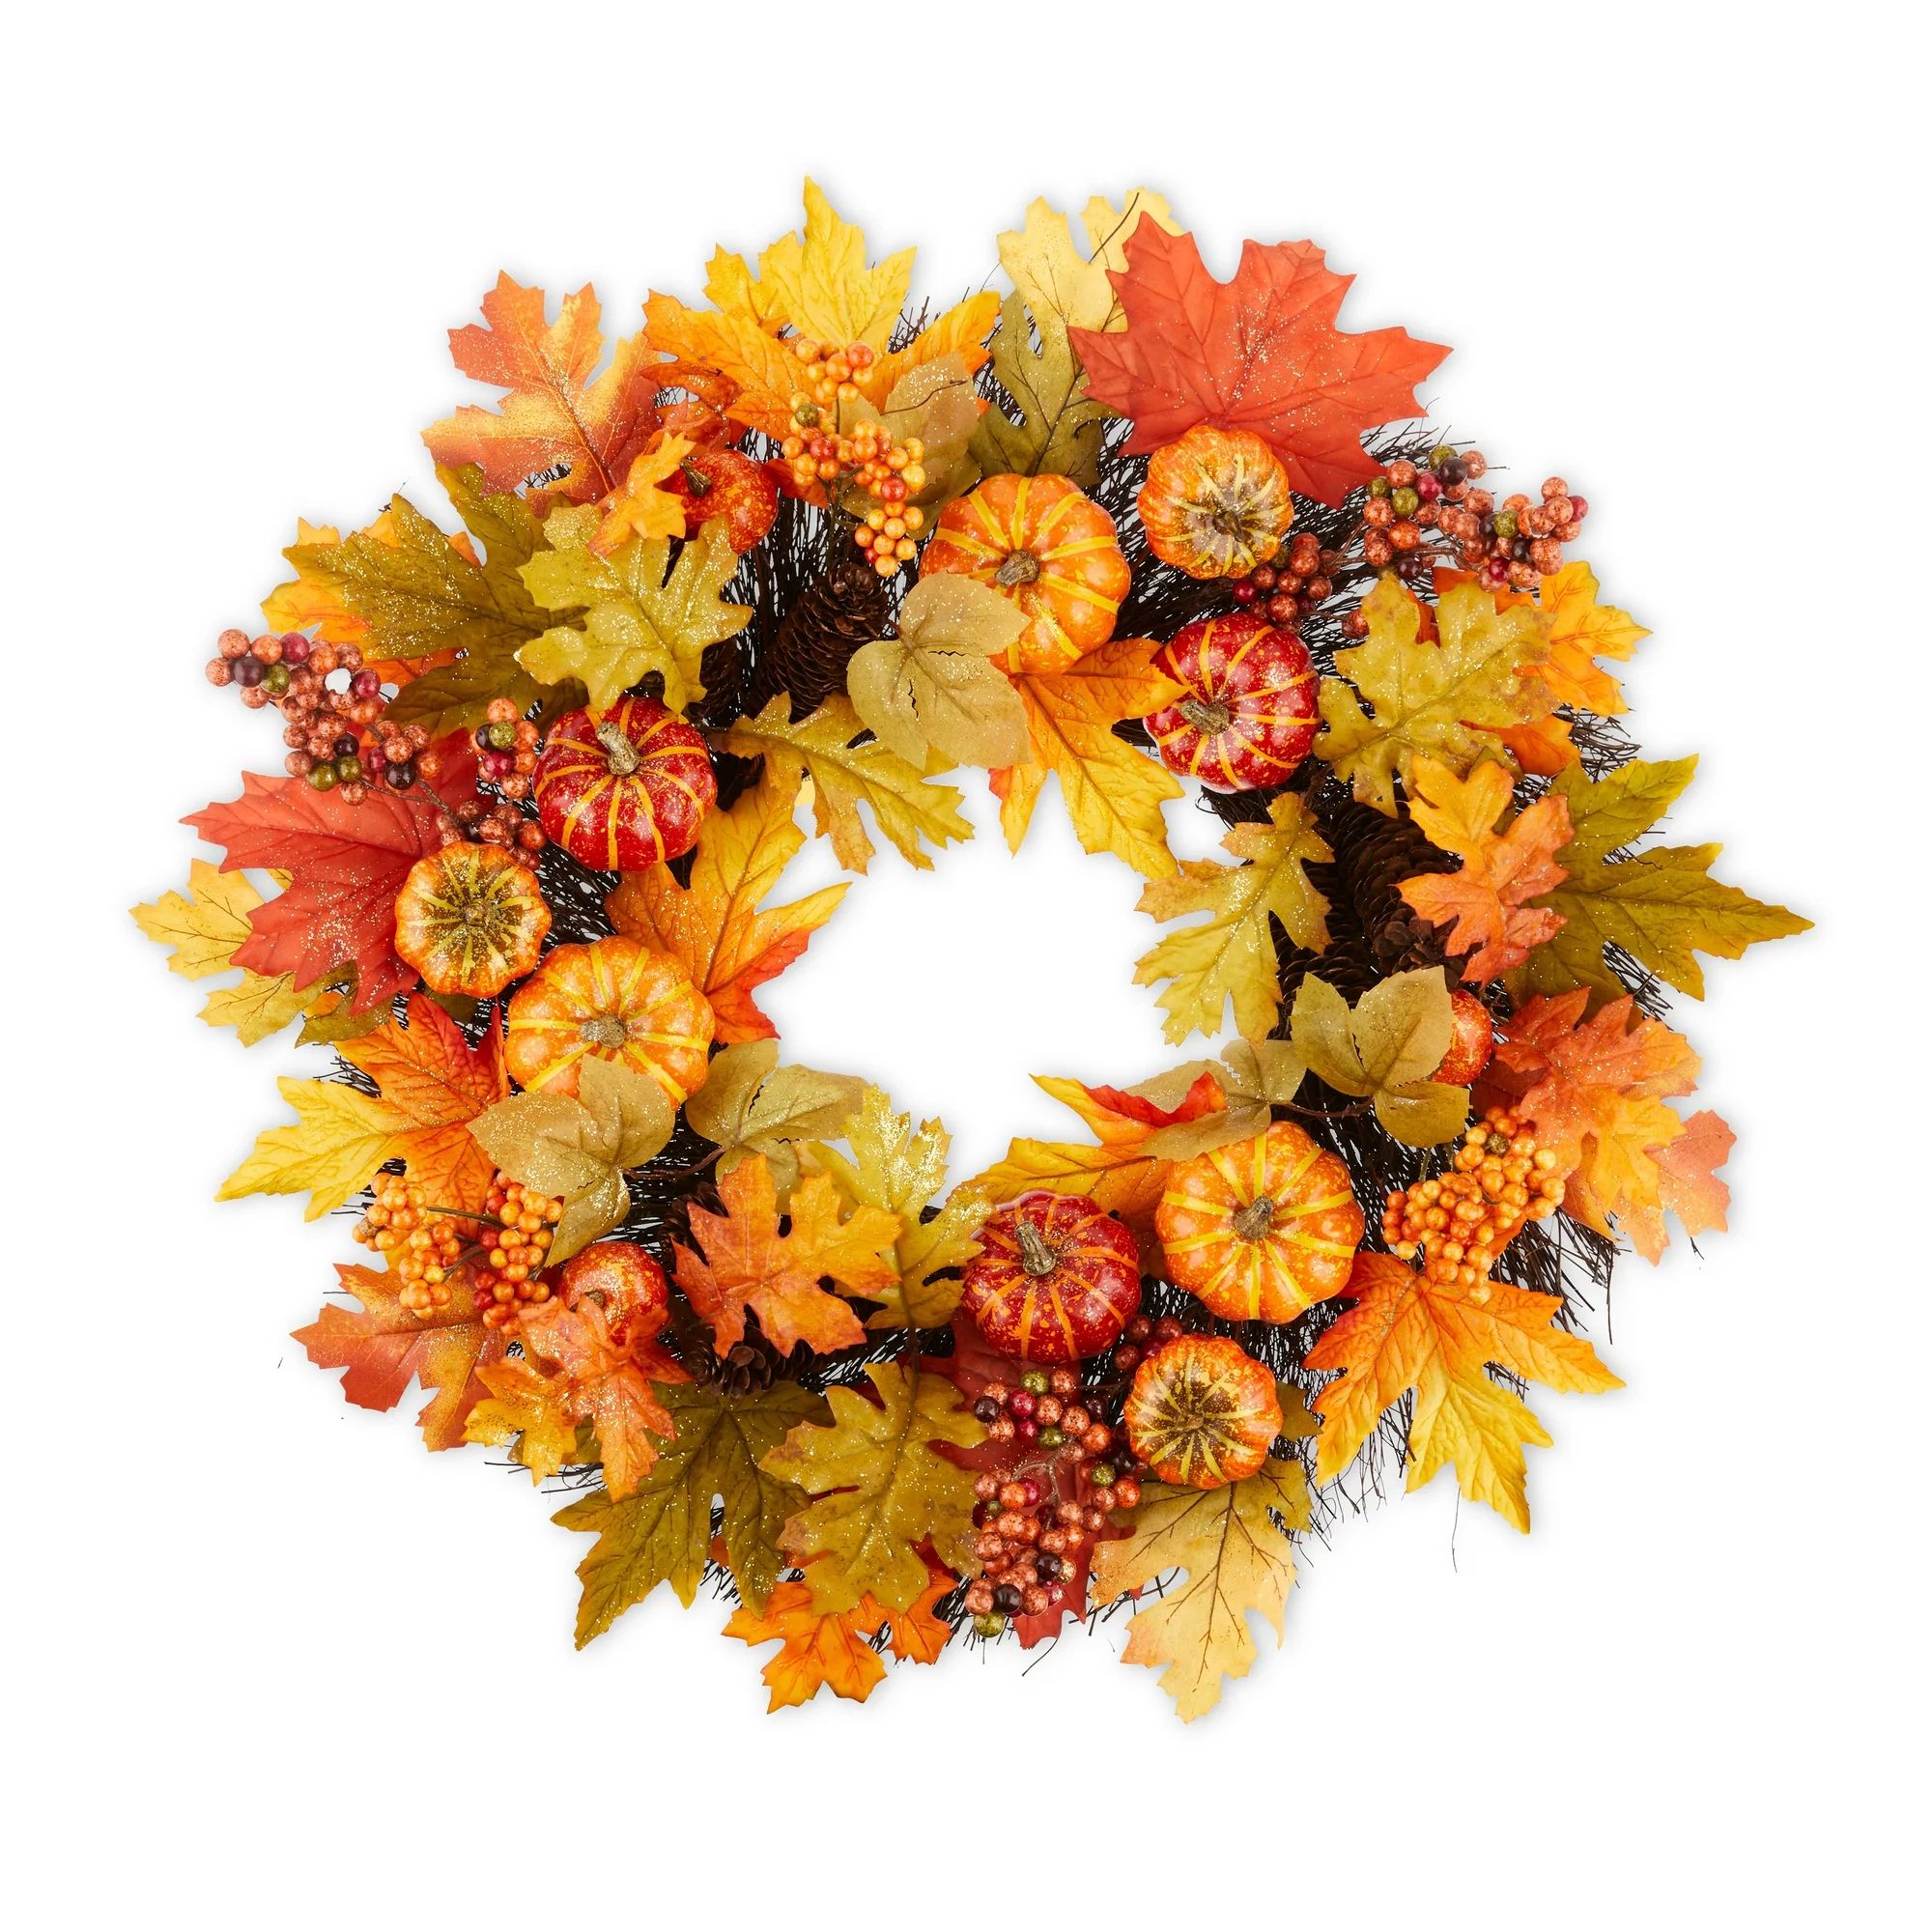 Fall, Harvest 24 in x 5 in x 24 in Glitter Orange Pumpkins & Leaves Wreath, Way to Celebrate | Walmart (US)